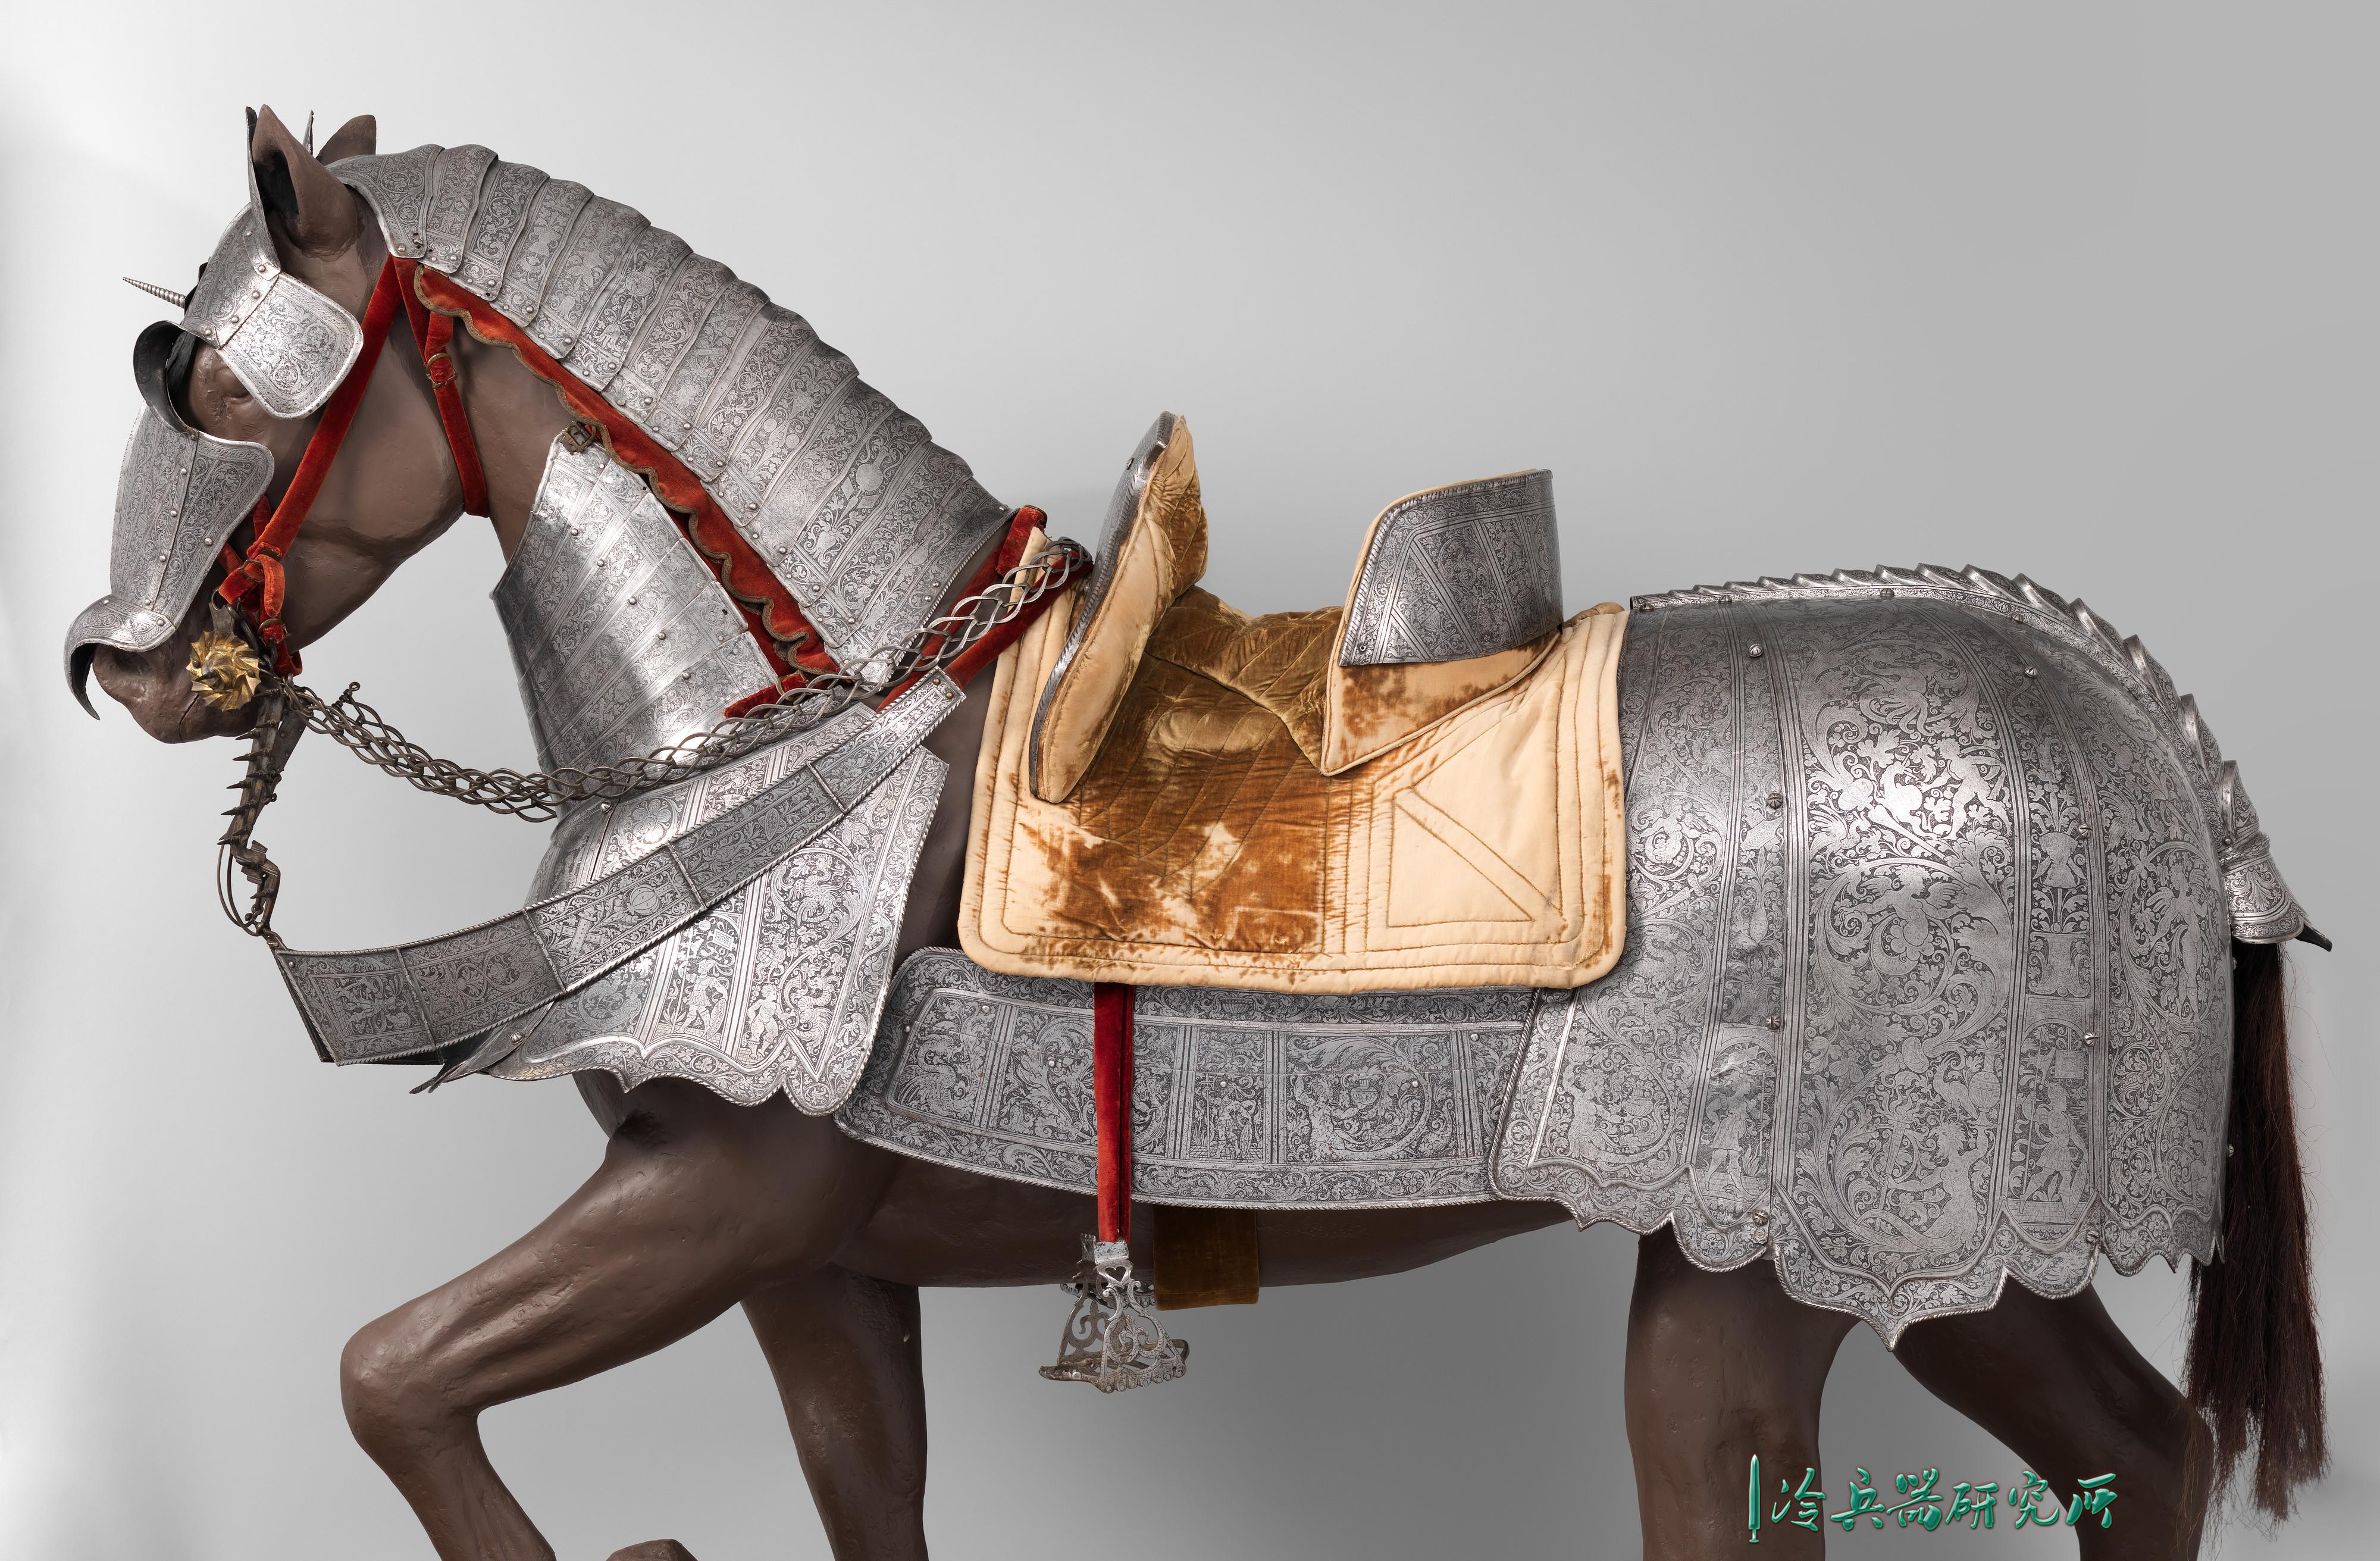 欧洲近代骑士马铠巡礼：这些造型奇特的马铠其实只是样子货？ - 知乎